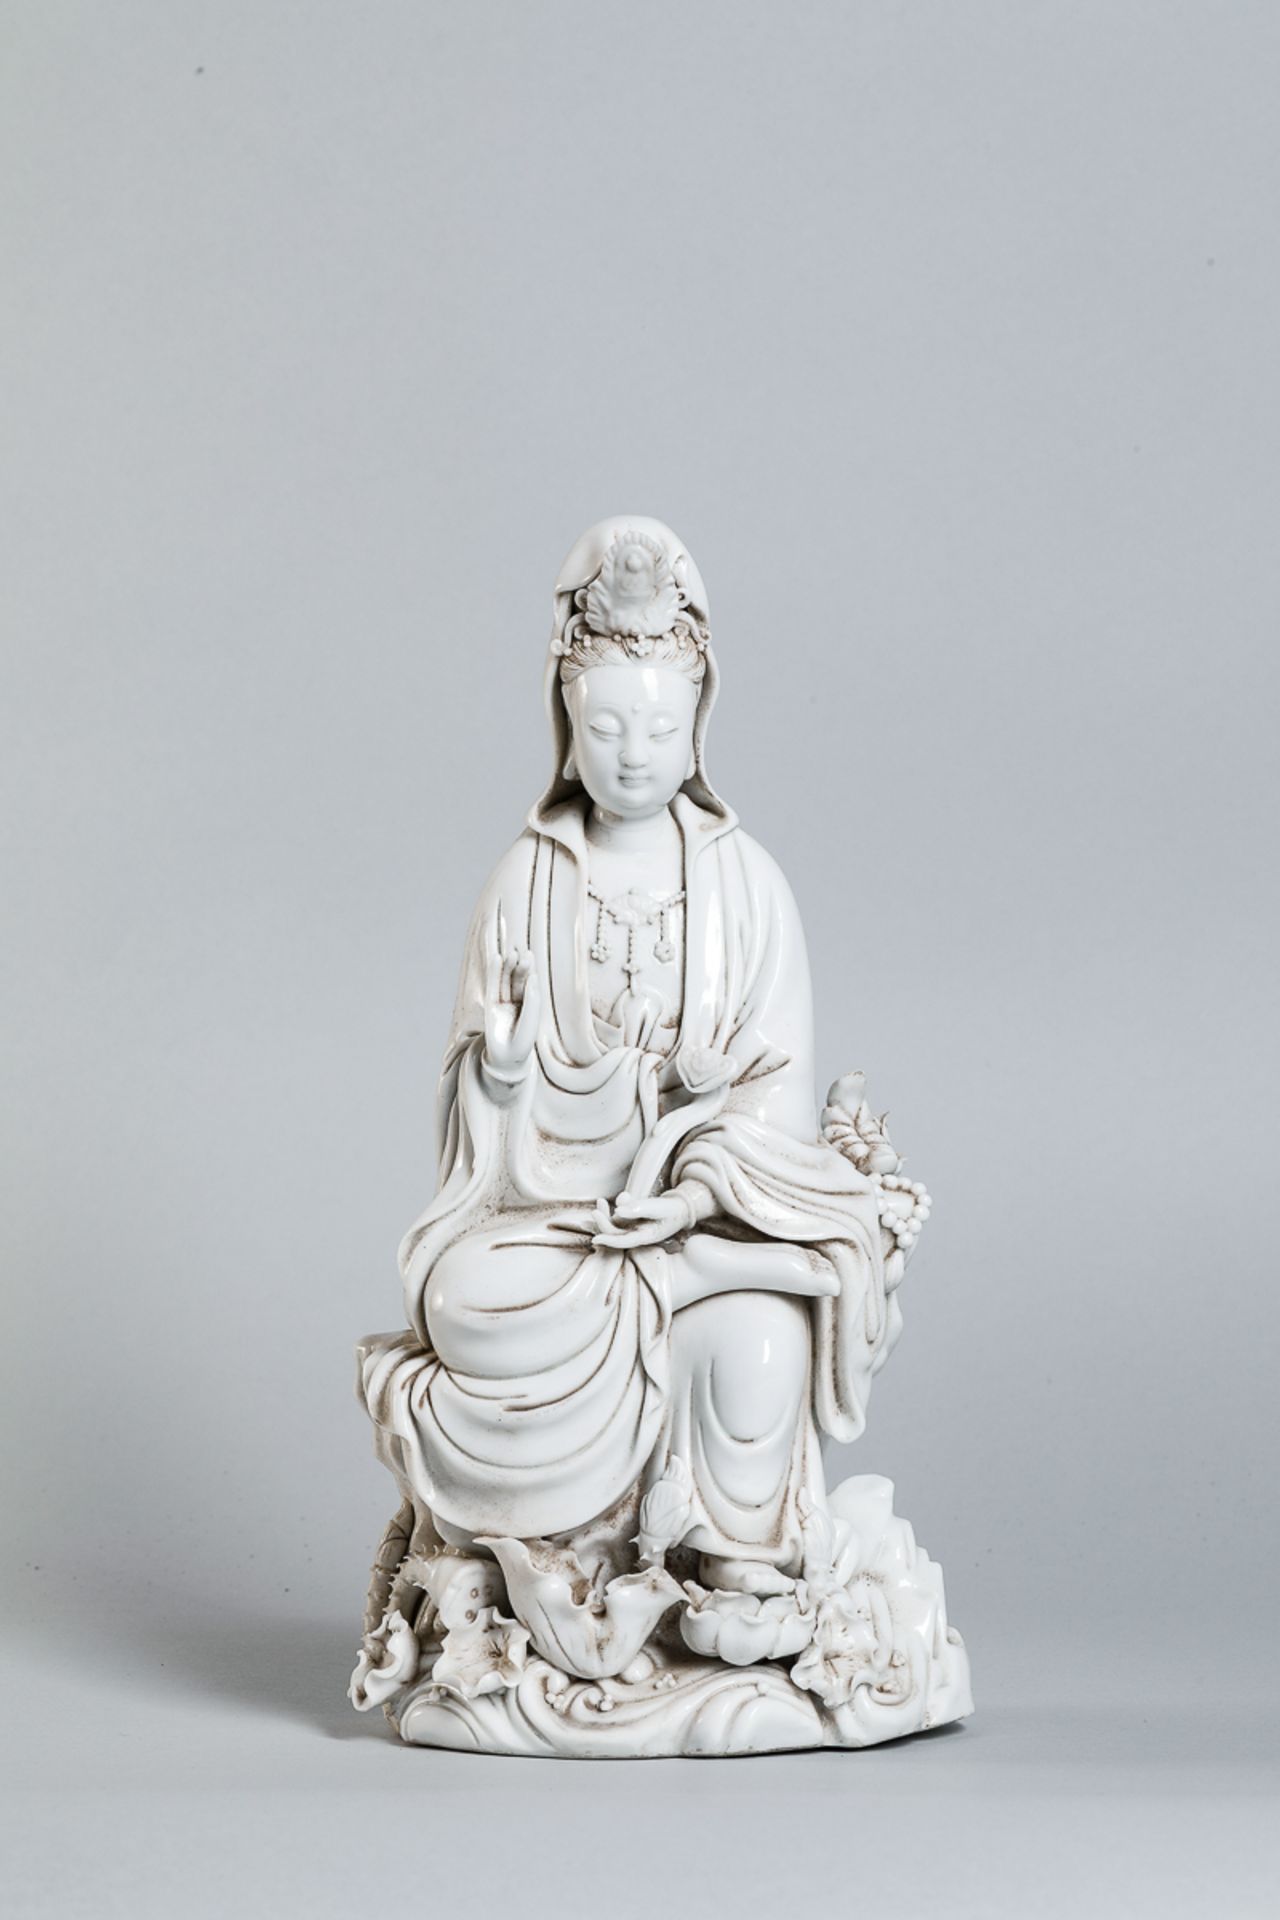 Le Boddhisattva Kwan Yin assis en délassement sur un tertre rocailleux, vêtu de la robe monastique